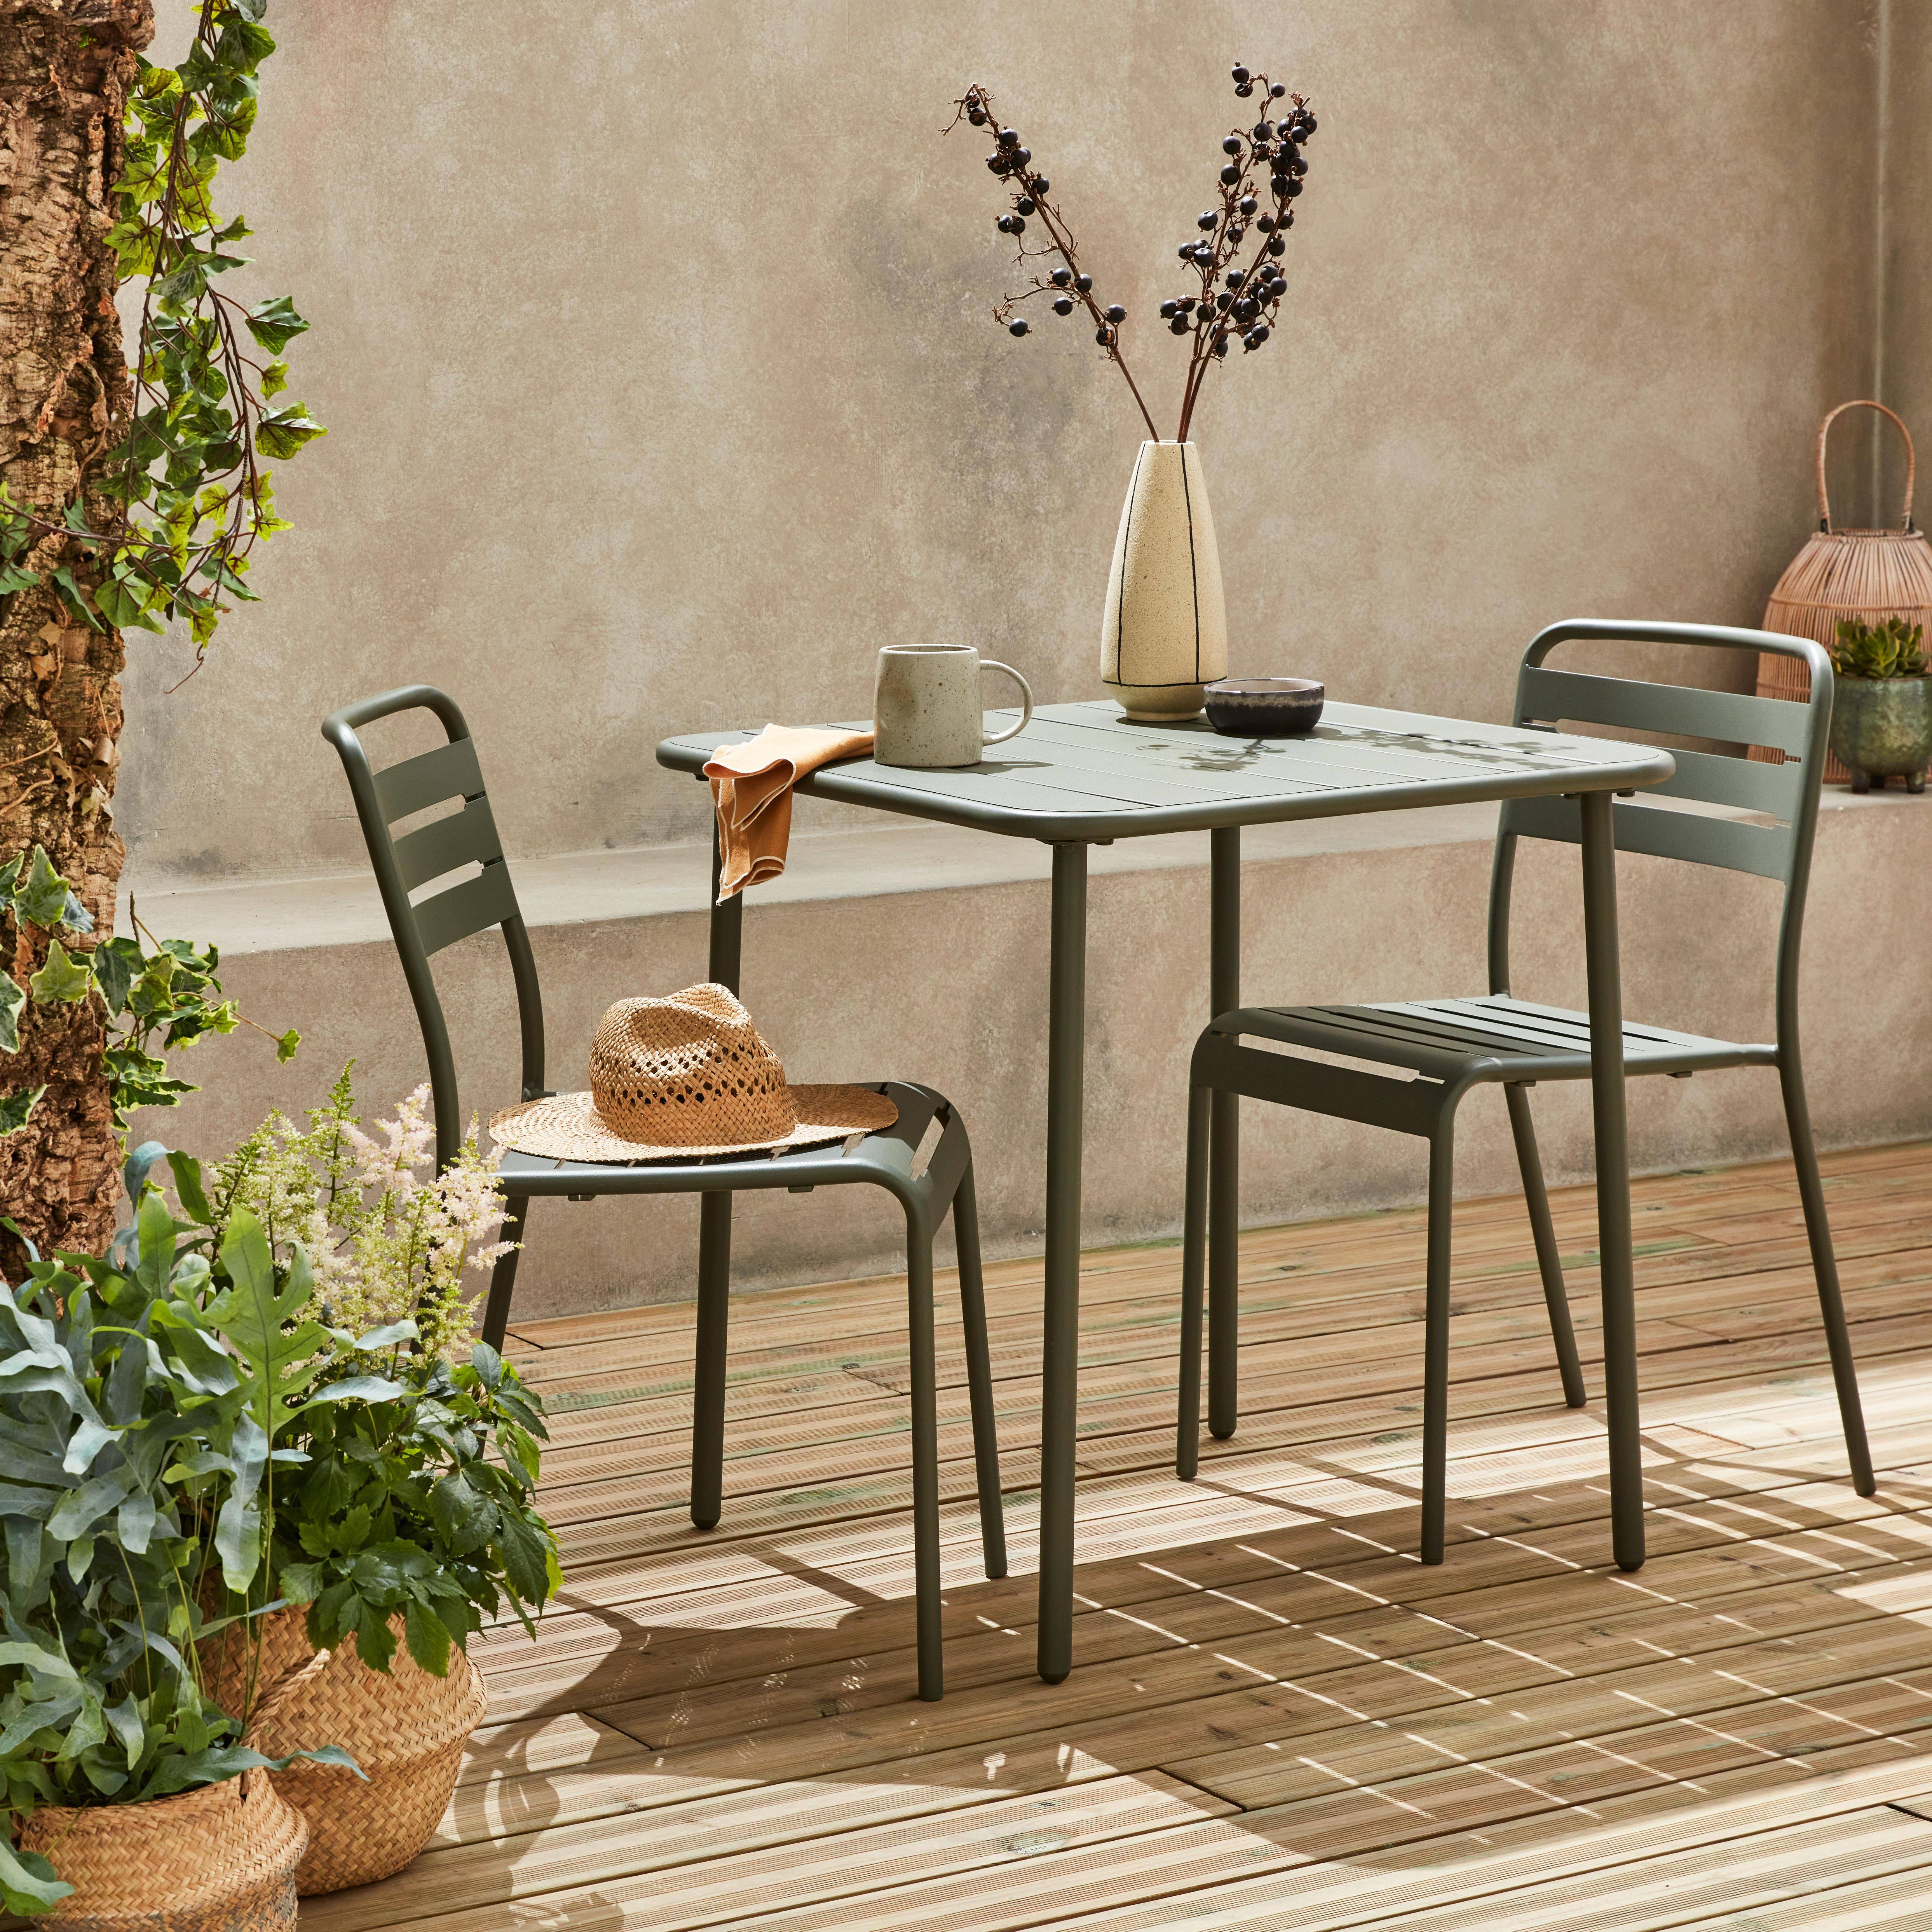 Metall-Gartentisch mit 2 Stühlen, 2 Personen, Amelia Savanne 70 x 70 cm Photo2